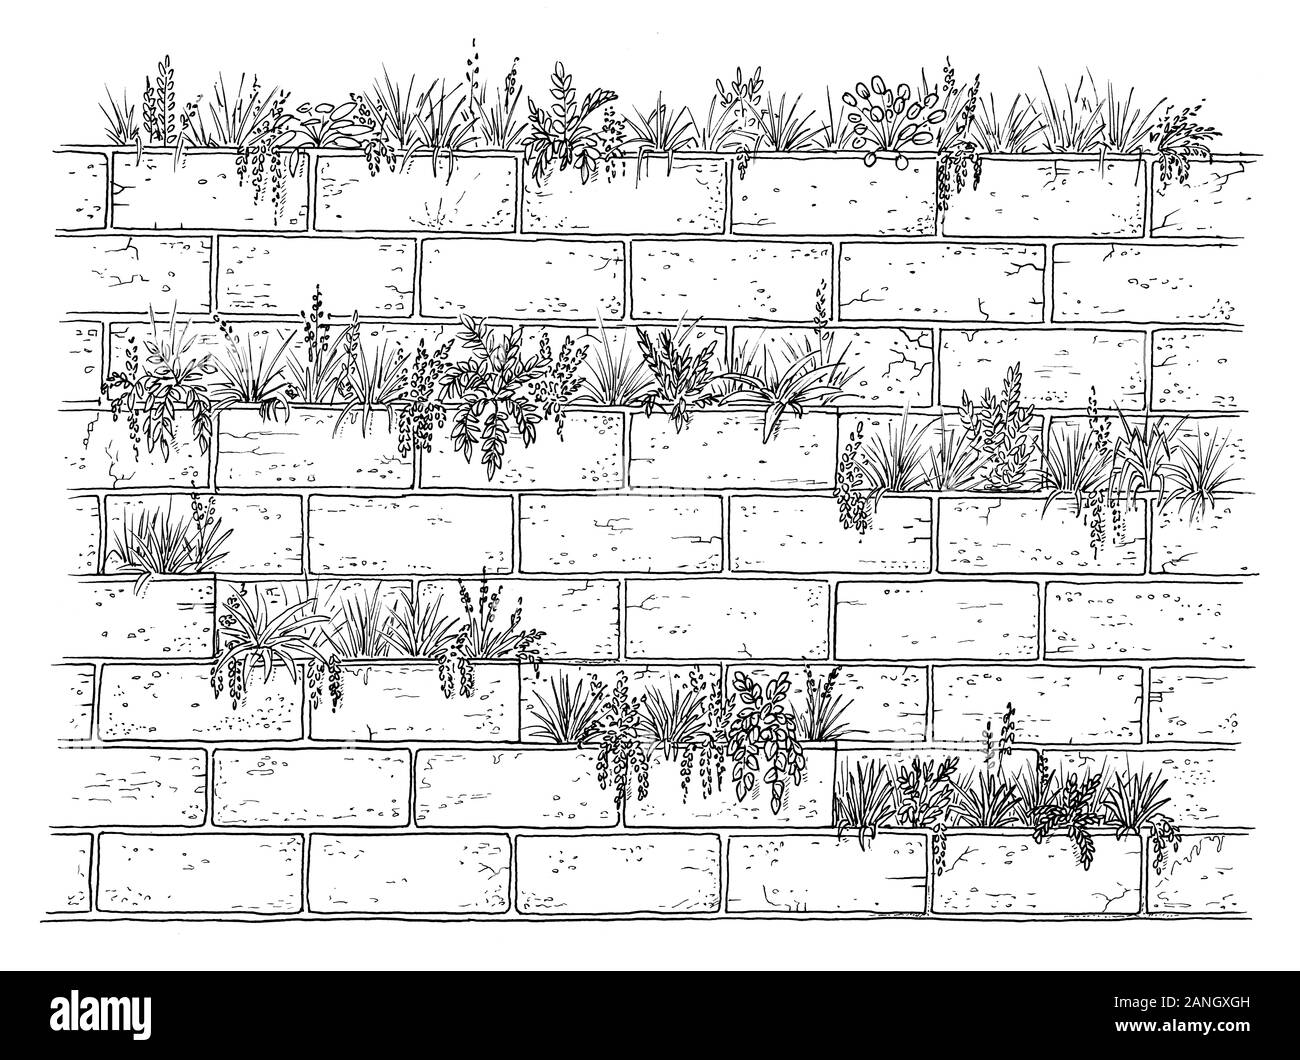 Dessin de concept de mur végétal. Croquis de végétaux plantés dans le mur de brique, noir et blanc illustration Banque D'Images